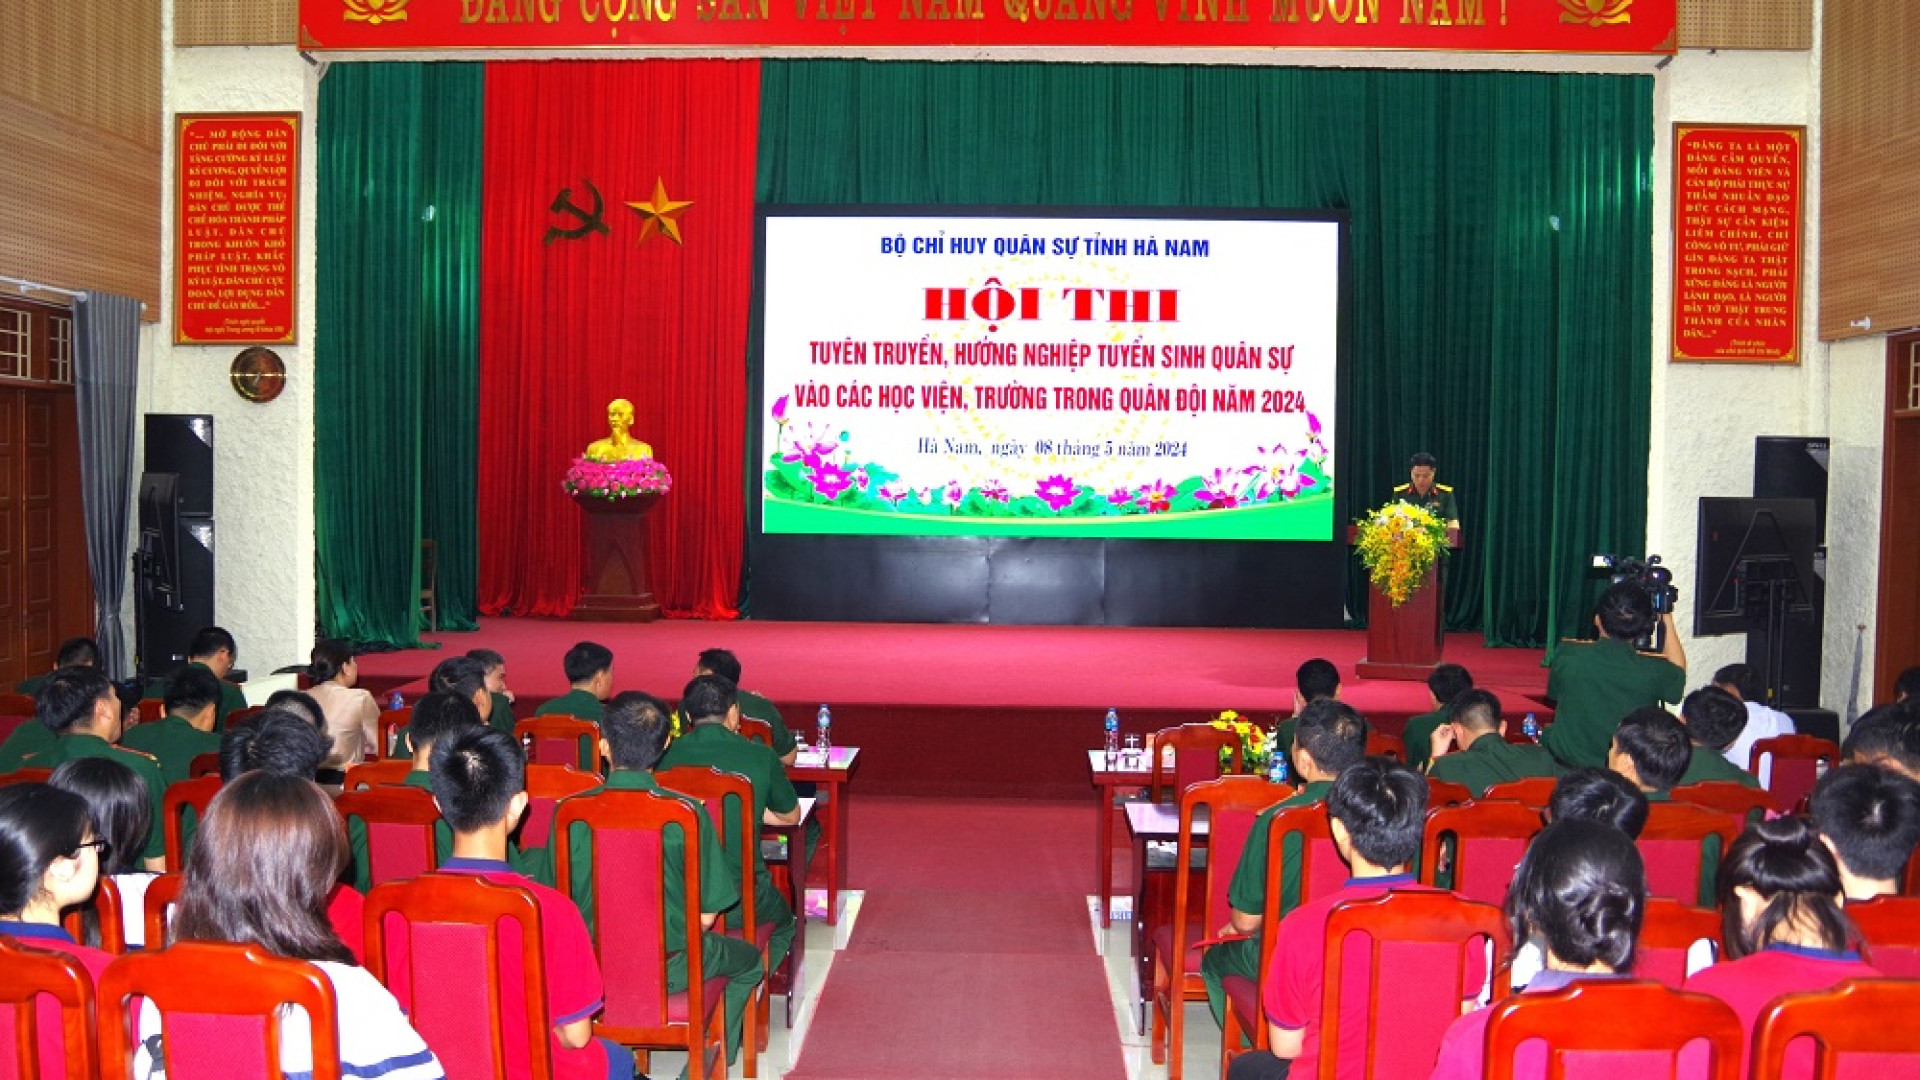 Bộ CHQS tỉnh Hà Nam thi tuyên truyền, hướng nghiệp tuyển sinh quân sự năm 2024